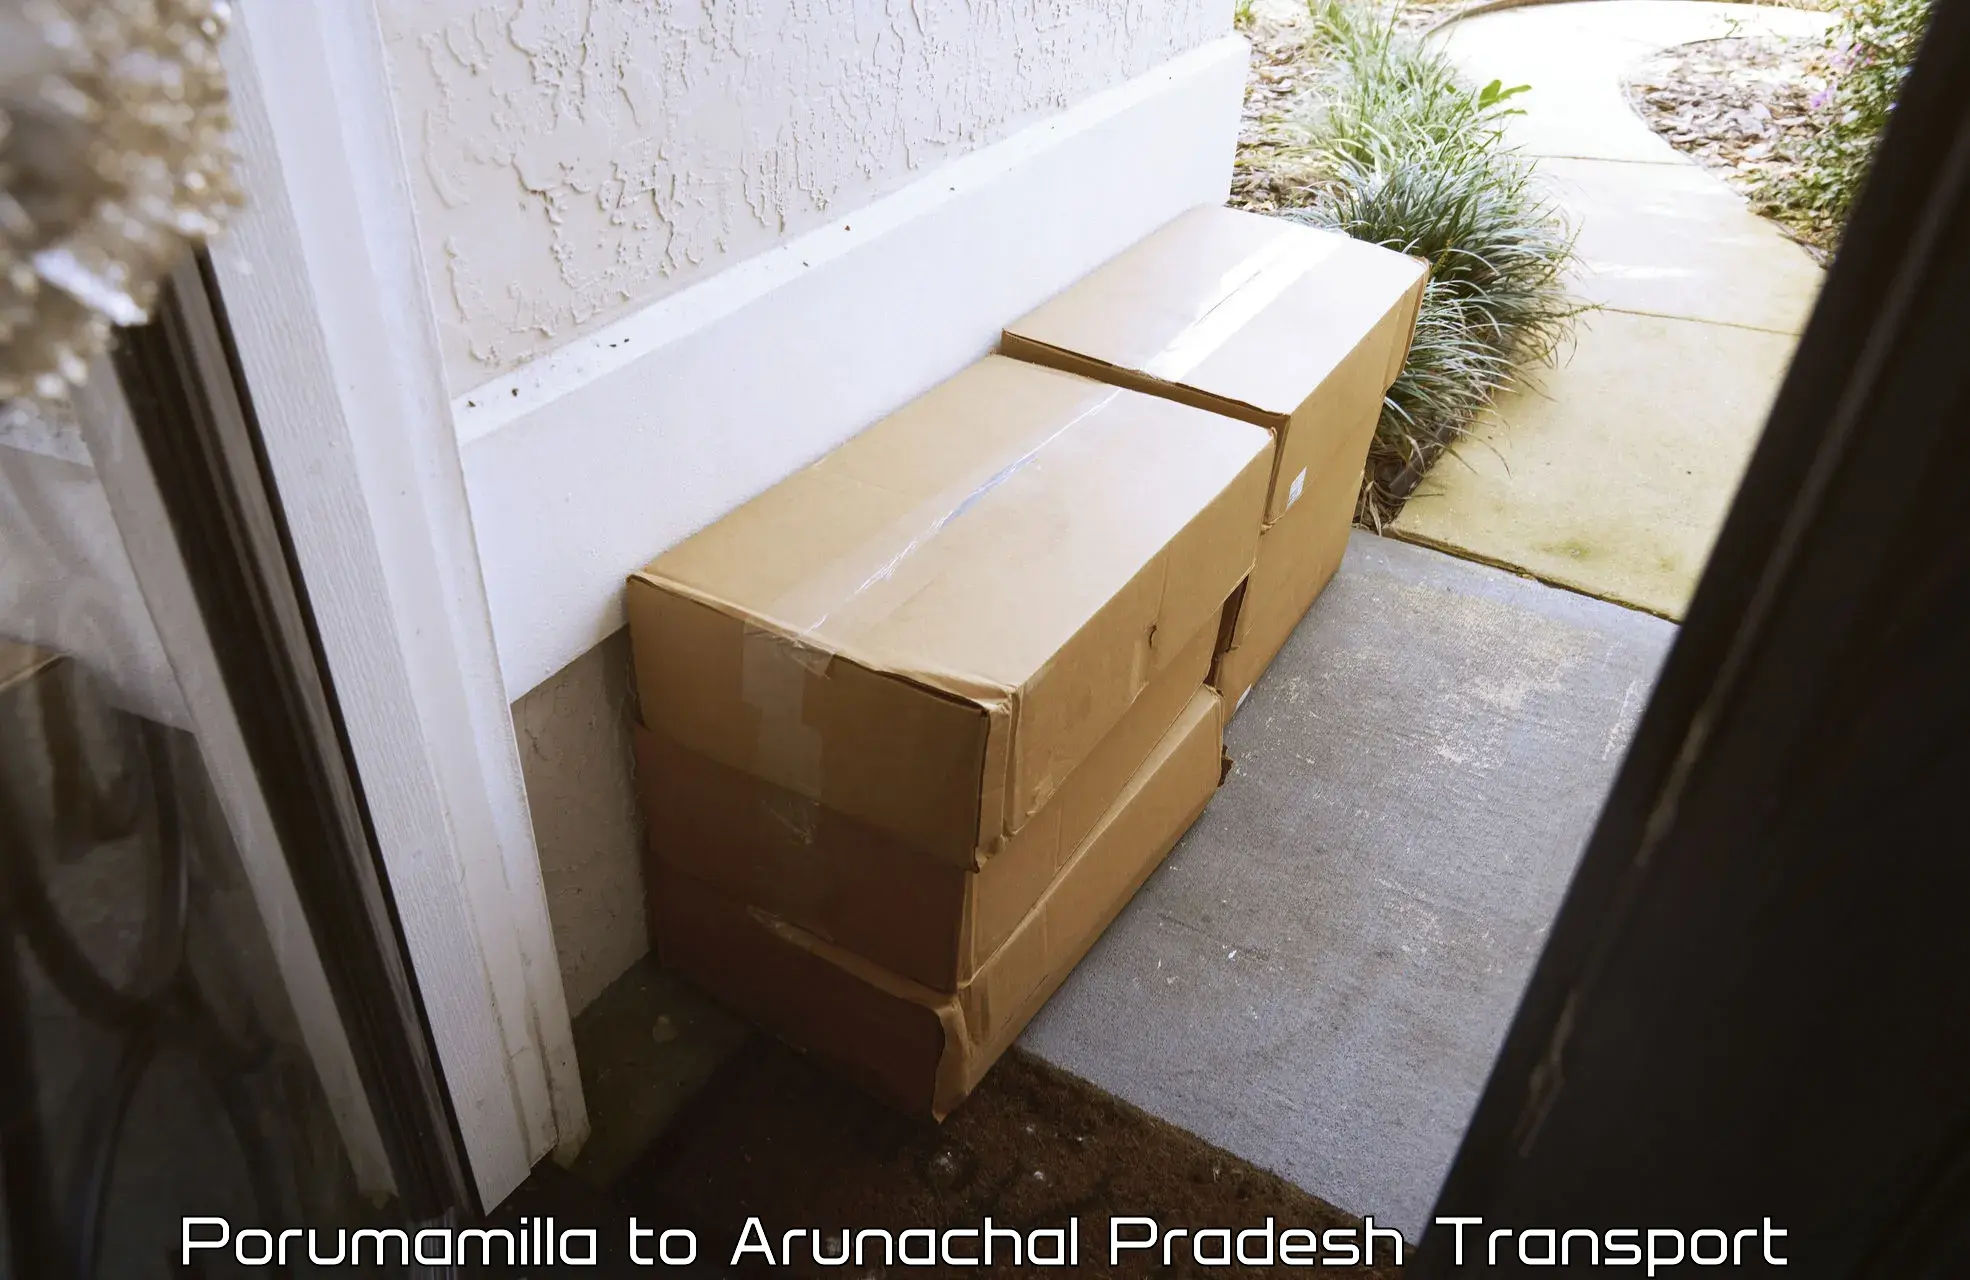 Goods transport services in Porumamilla to Arunachal Pradesh